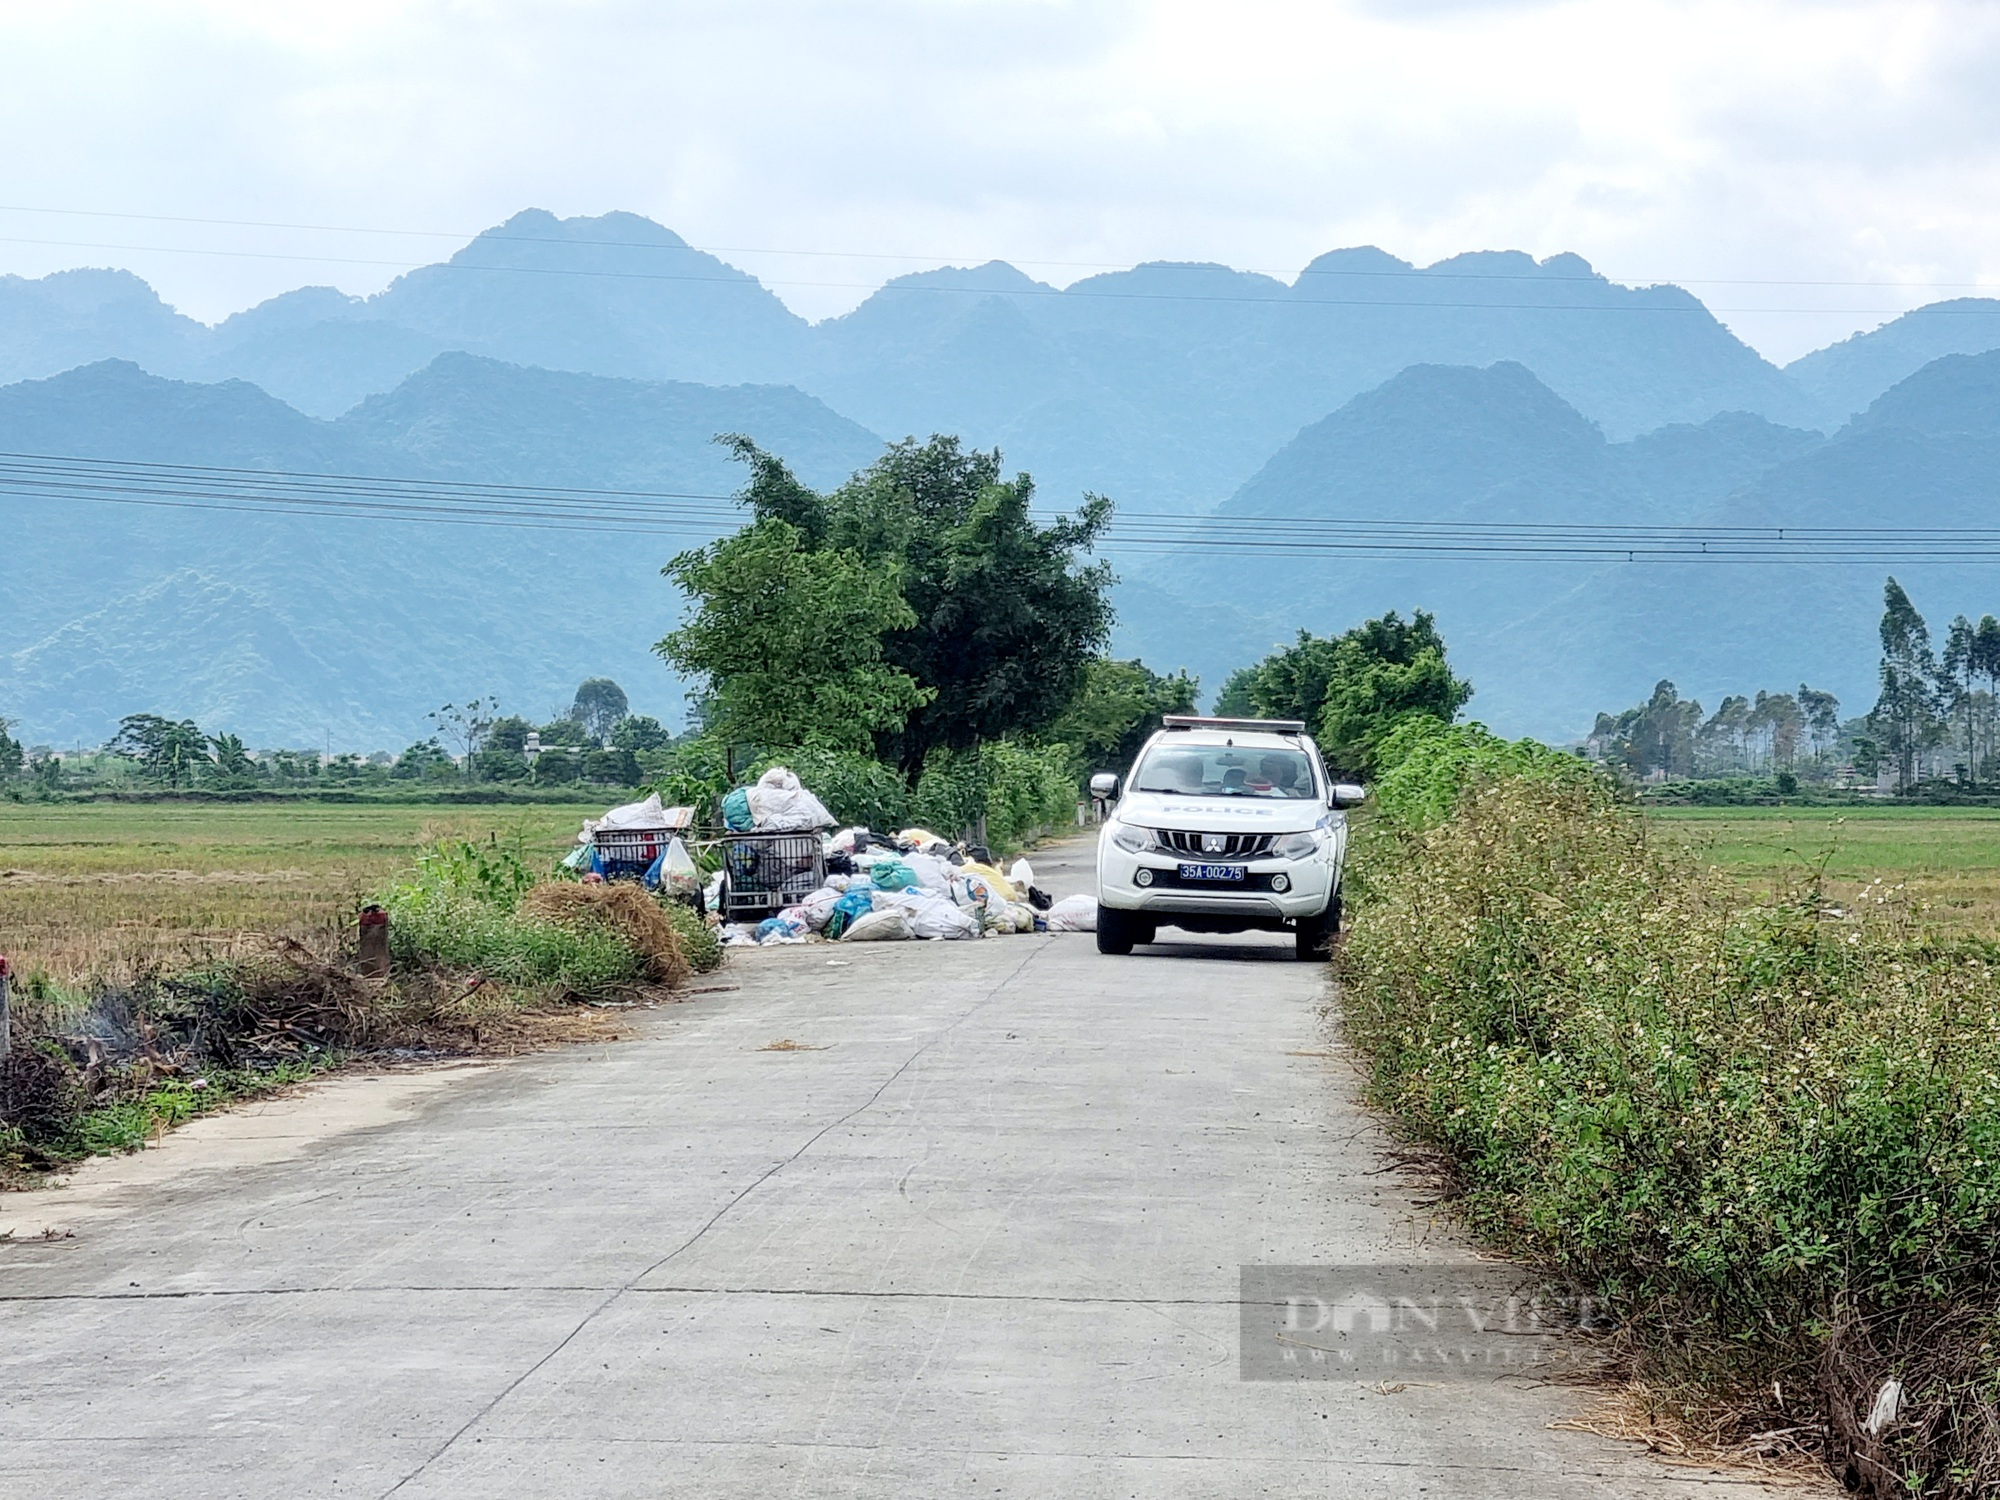 Rác thải được tập kết đúng vị trí ở xã nông thôn mới kiểu mẫu tại Ninh Bình sau phản ánh của Dân Việt - Ảnh 4.